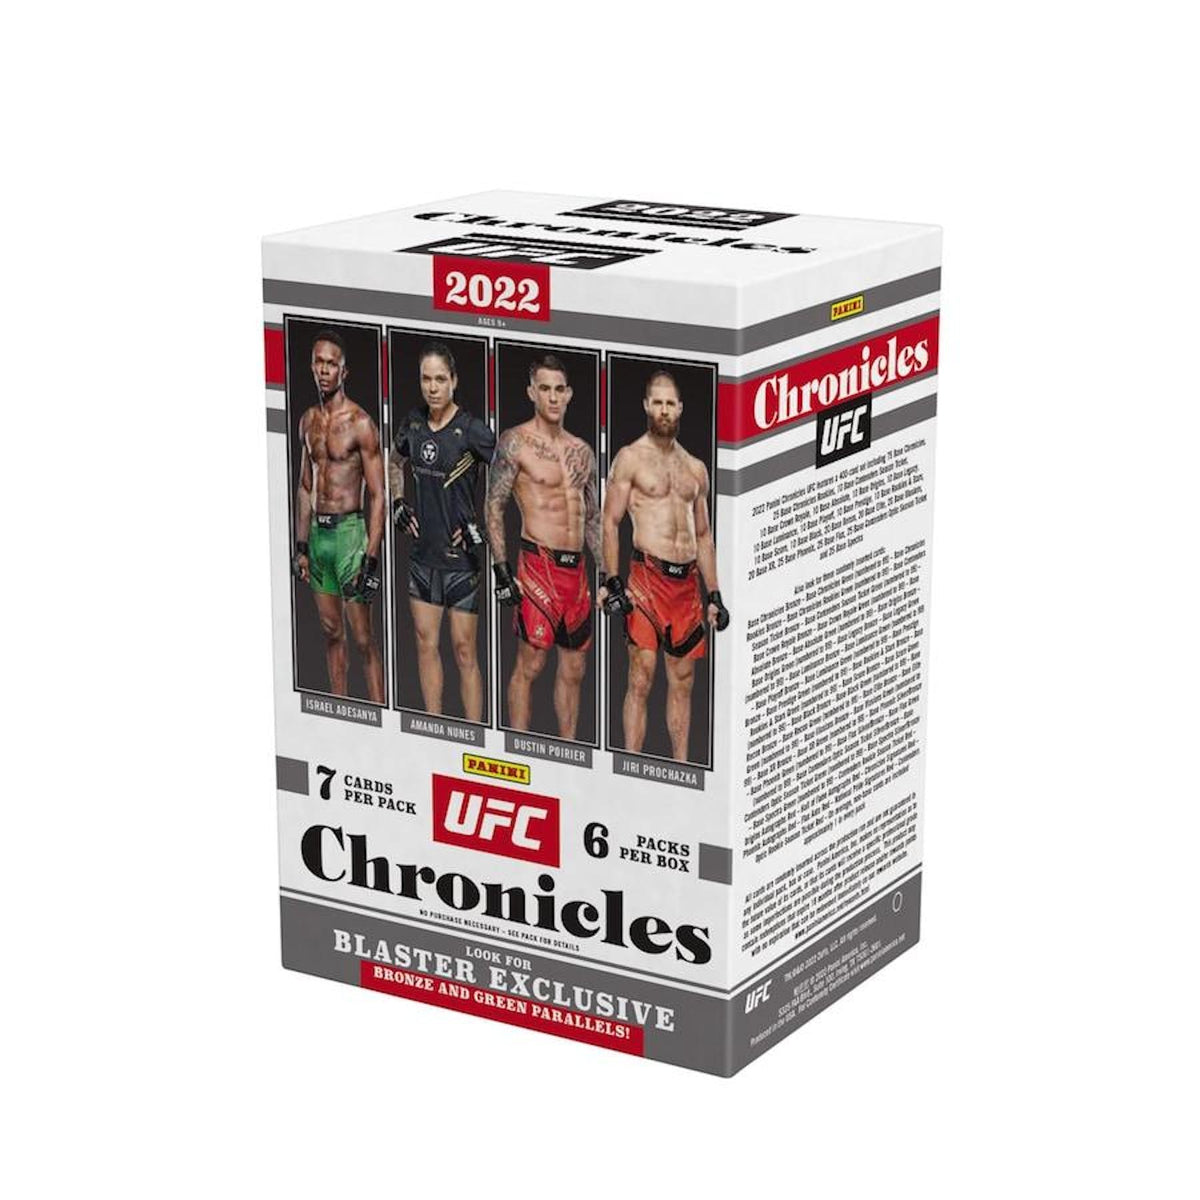 Panini - 2022 Chronicles UFC Blaster Box